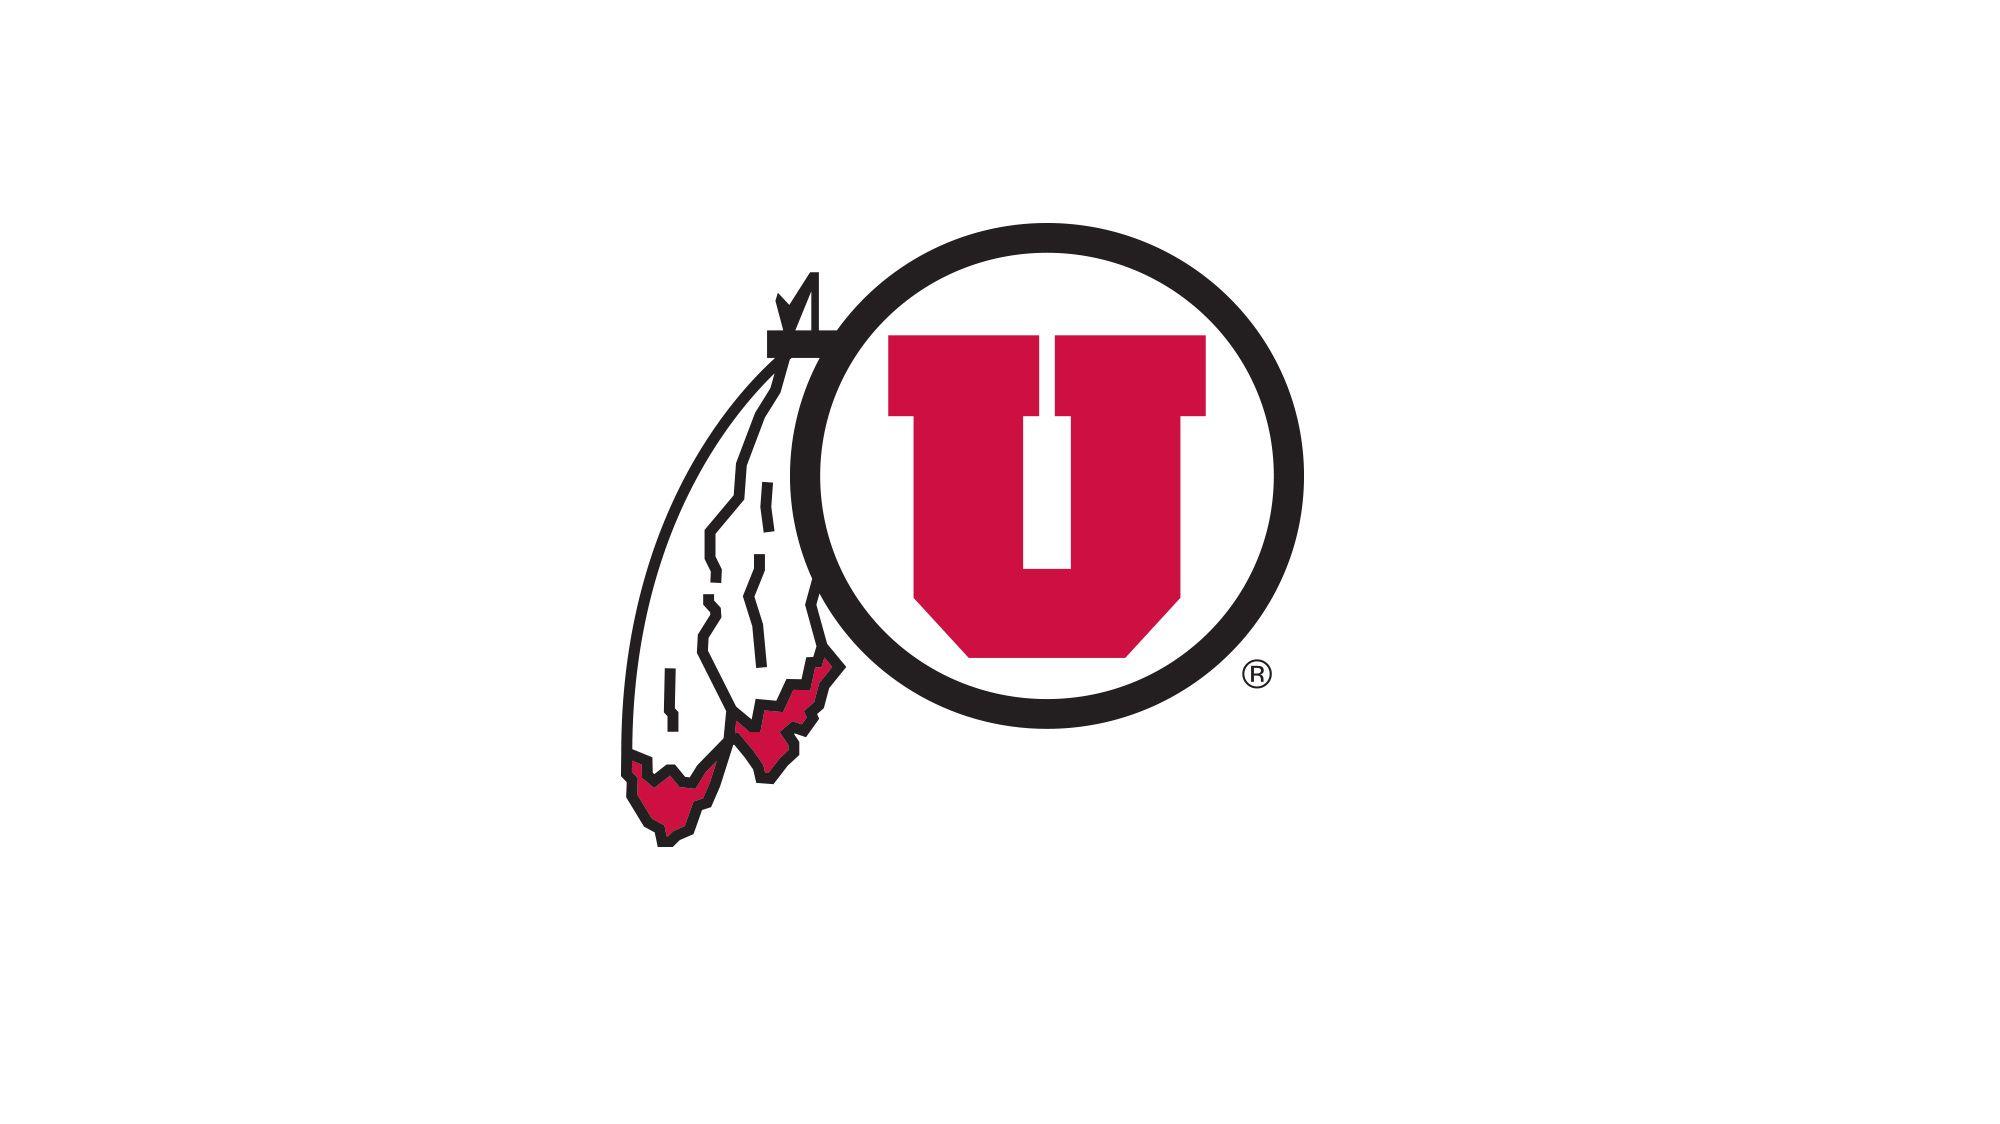 U of U Logo - Utah Athletics to Partner with Learfield of Utah Athletics